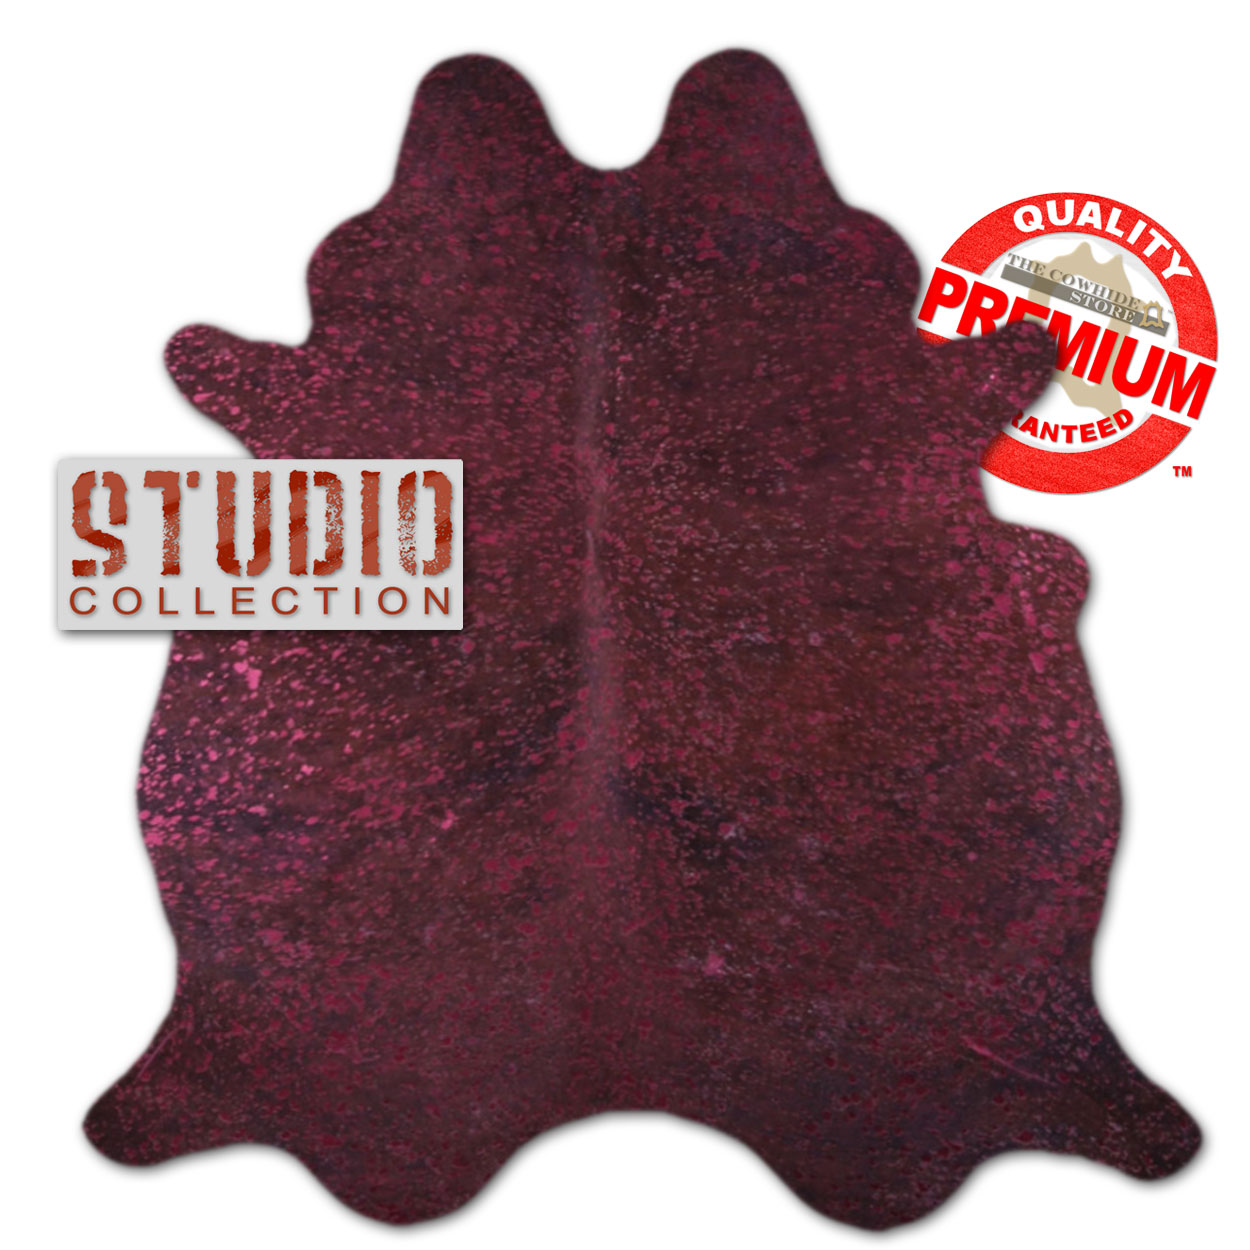 328329 - Metallic Color Splash Burgundy on Dark Brown Cowhide - Choose Size